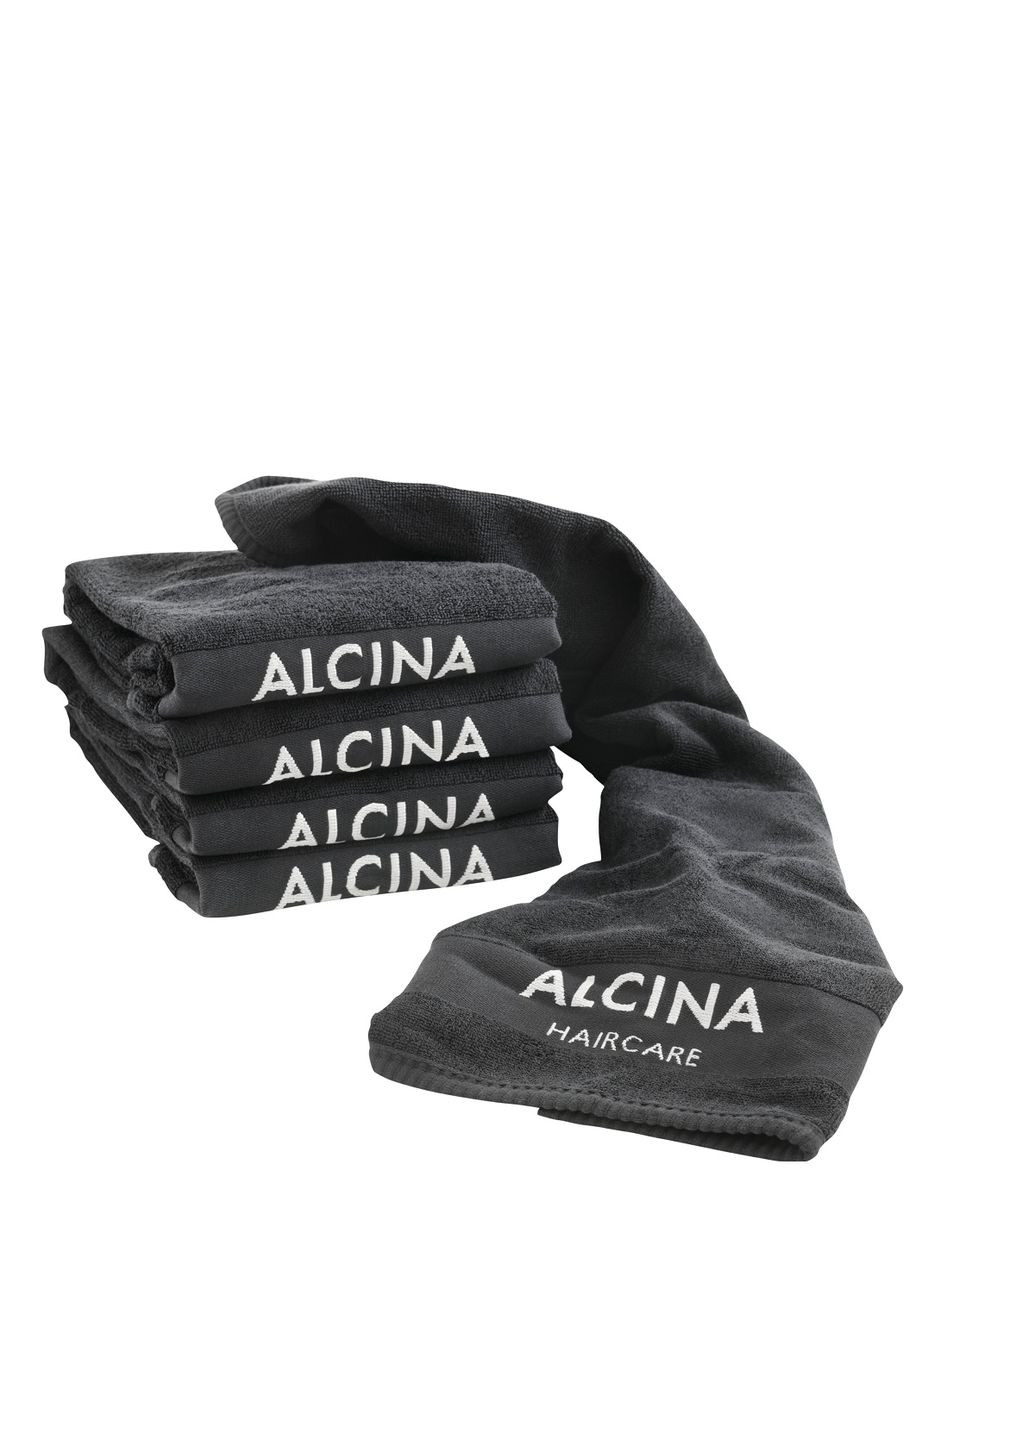 Alcina полотенце косметологическое 5 шт черни с логотипом 85х 50 см (19541) логотип черный производство - Германия